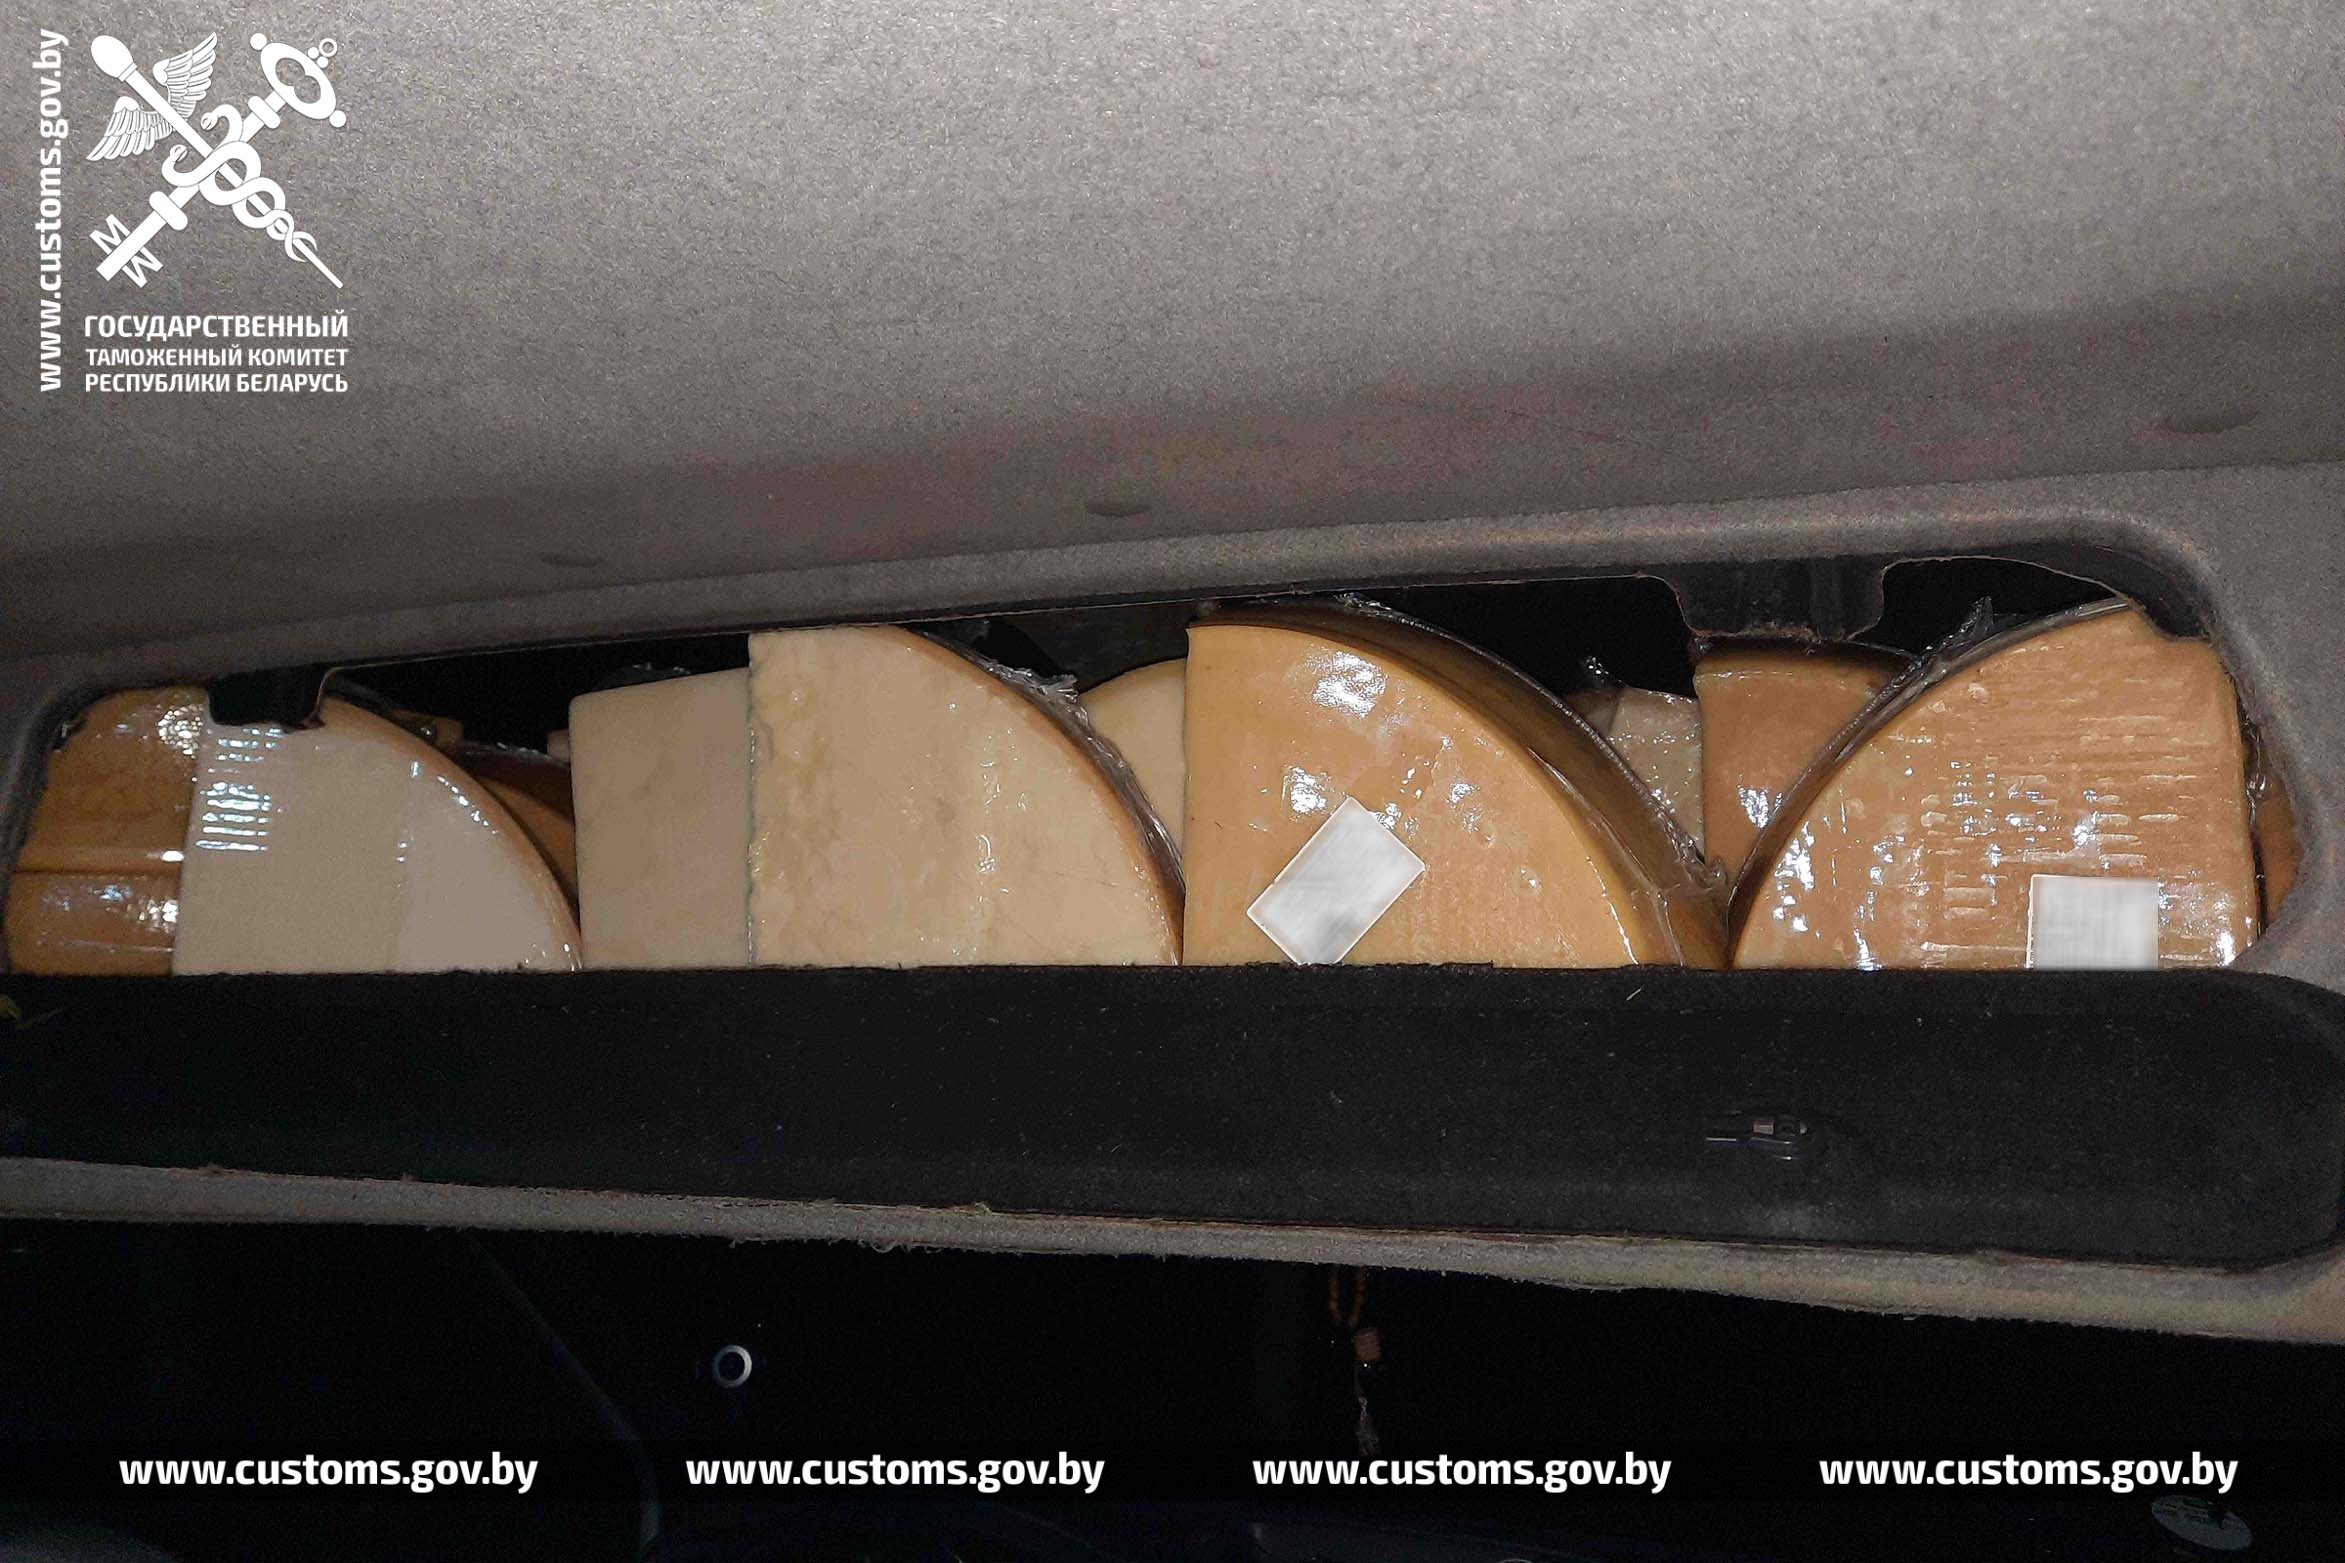 Таможенники раскрыли схему контрабанды европейского сыра в Россию